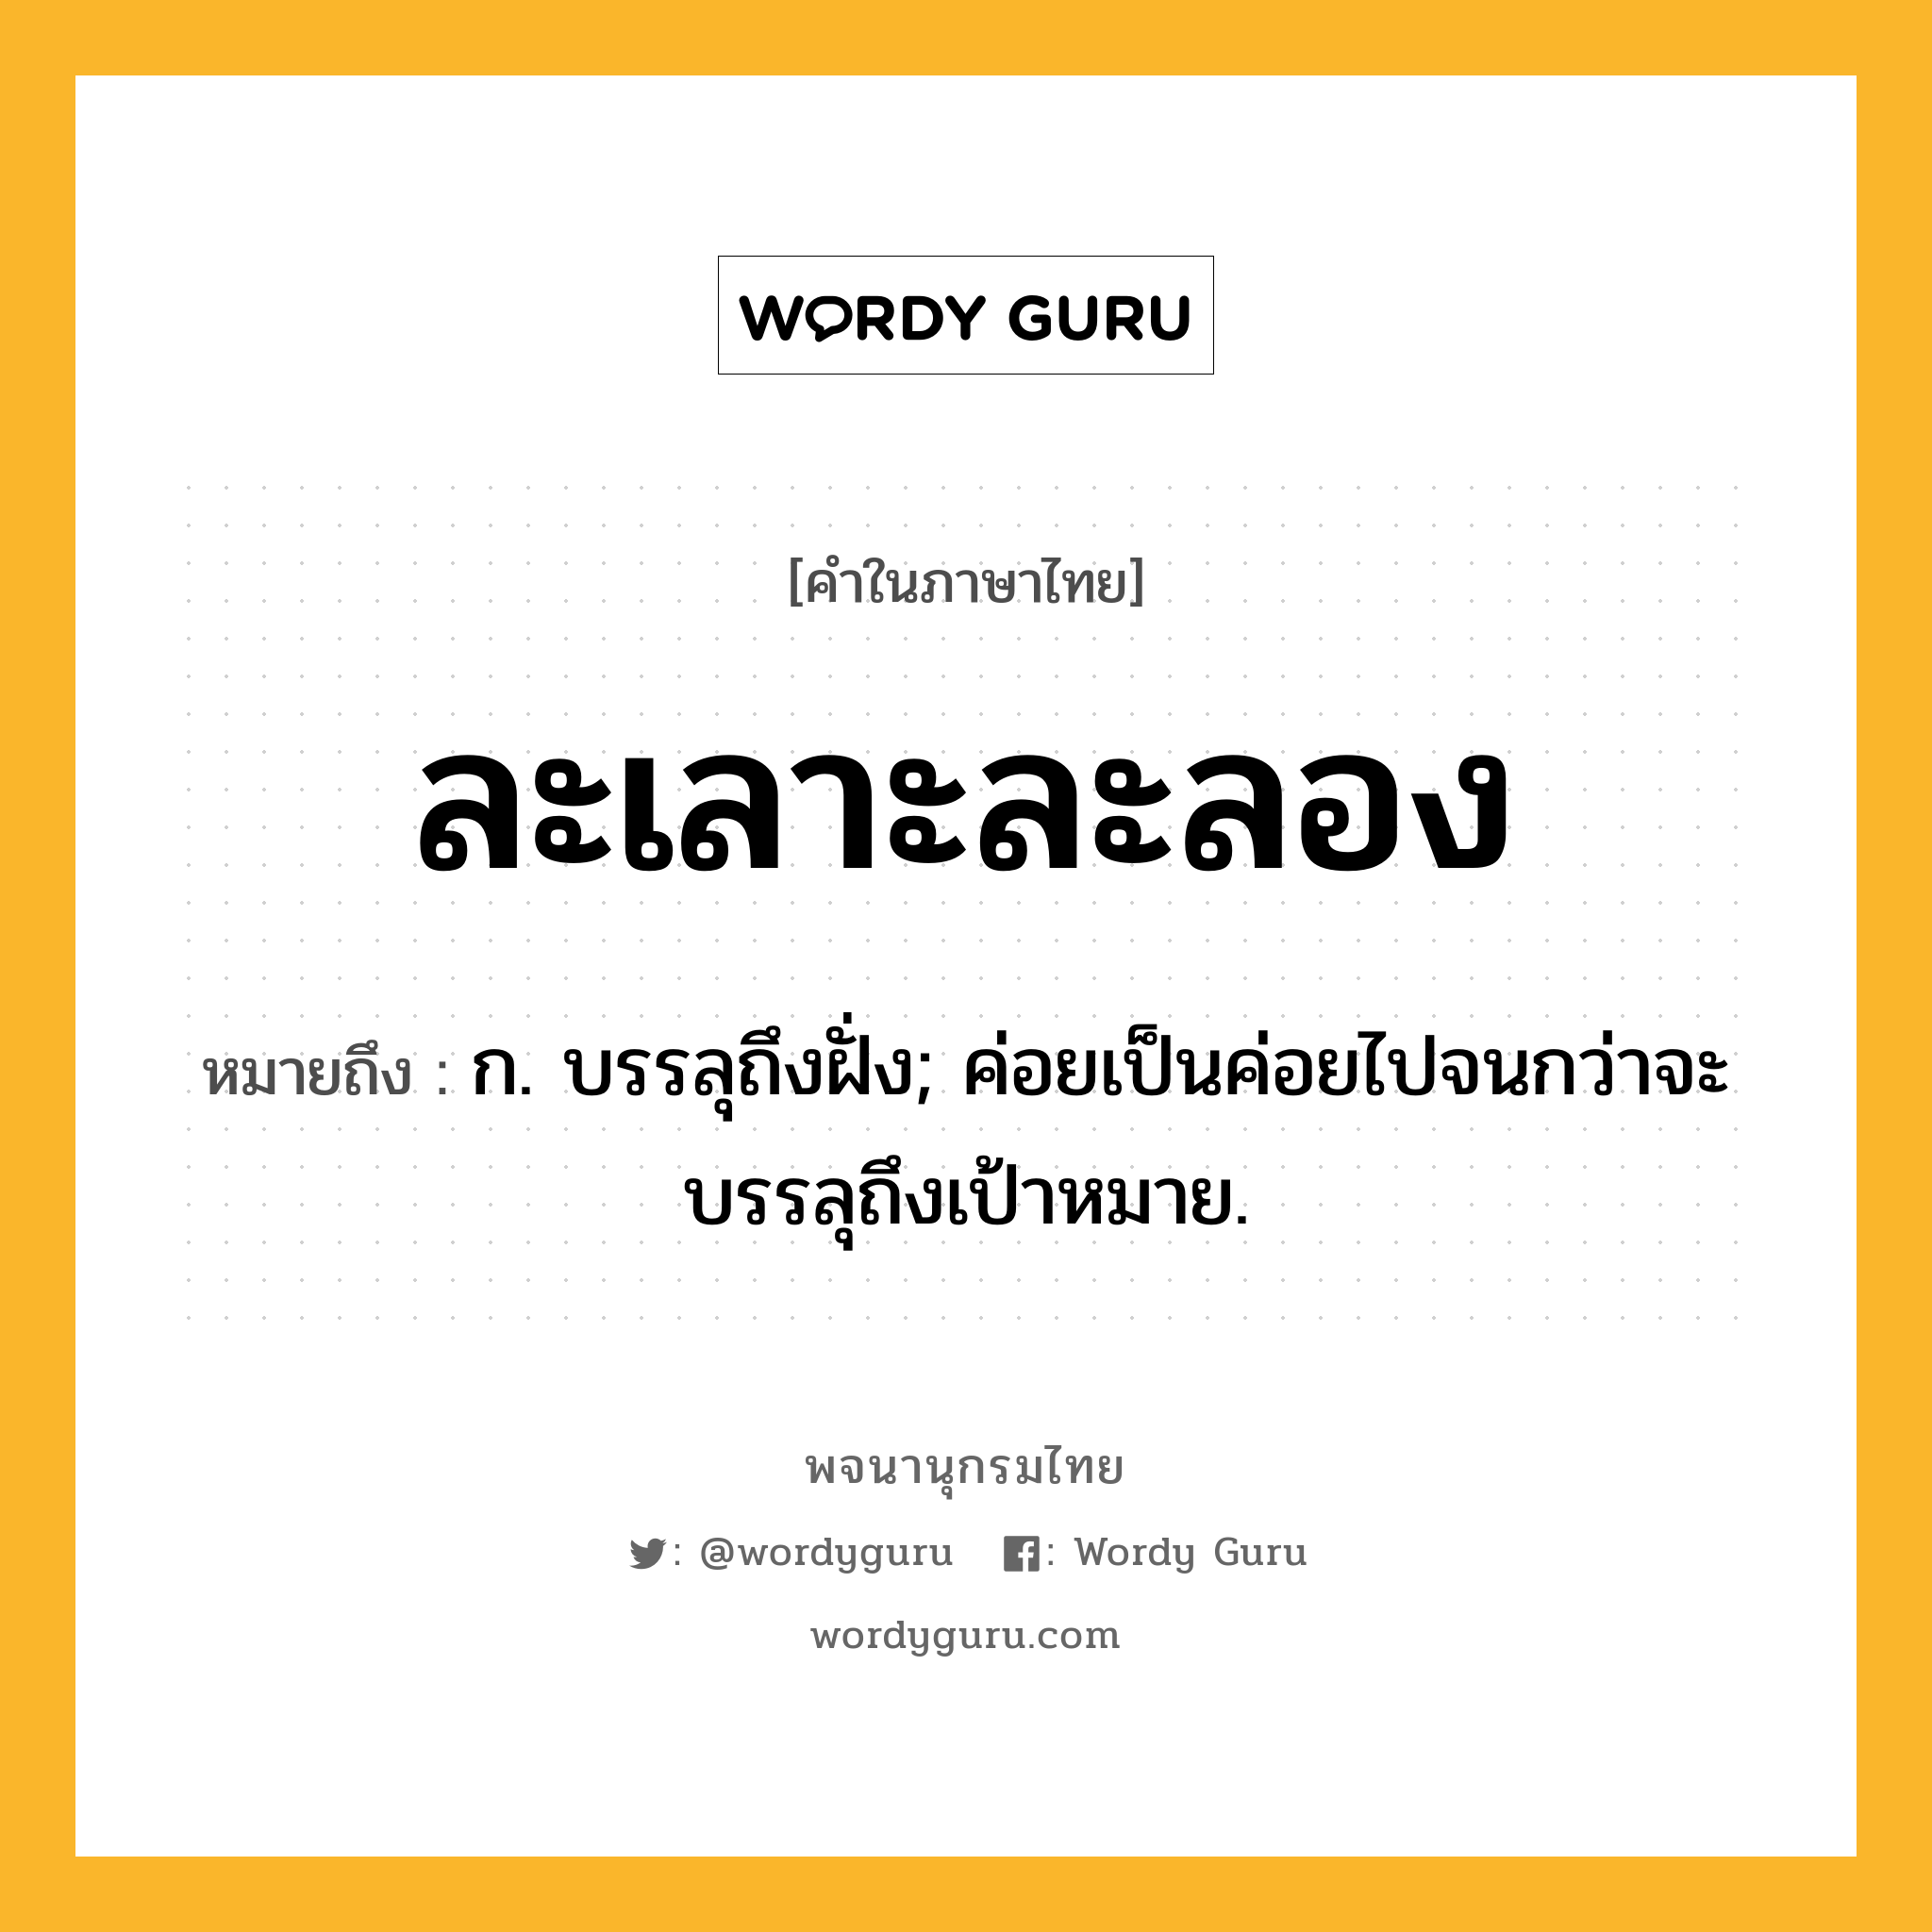 ละเลาะละลอง หมายถึงอะไร?, คำในภาษาไทย ละเลาะละลอง หมายถึง ก. บรรลุถึงฝั่ง; ค่อยเป็นค่อยไปจนกว่าจะบรรลุถึงเป้าหมาย.